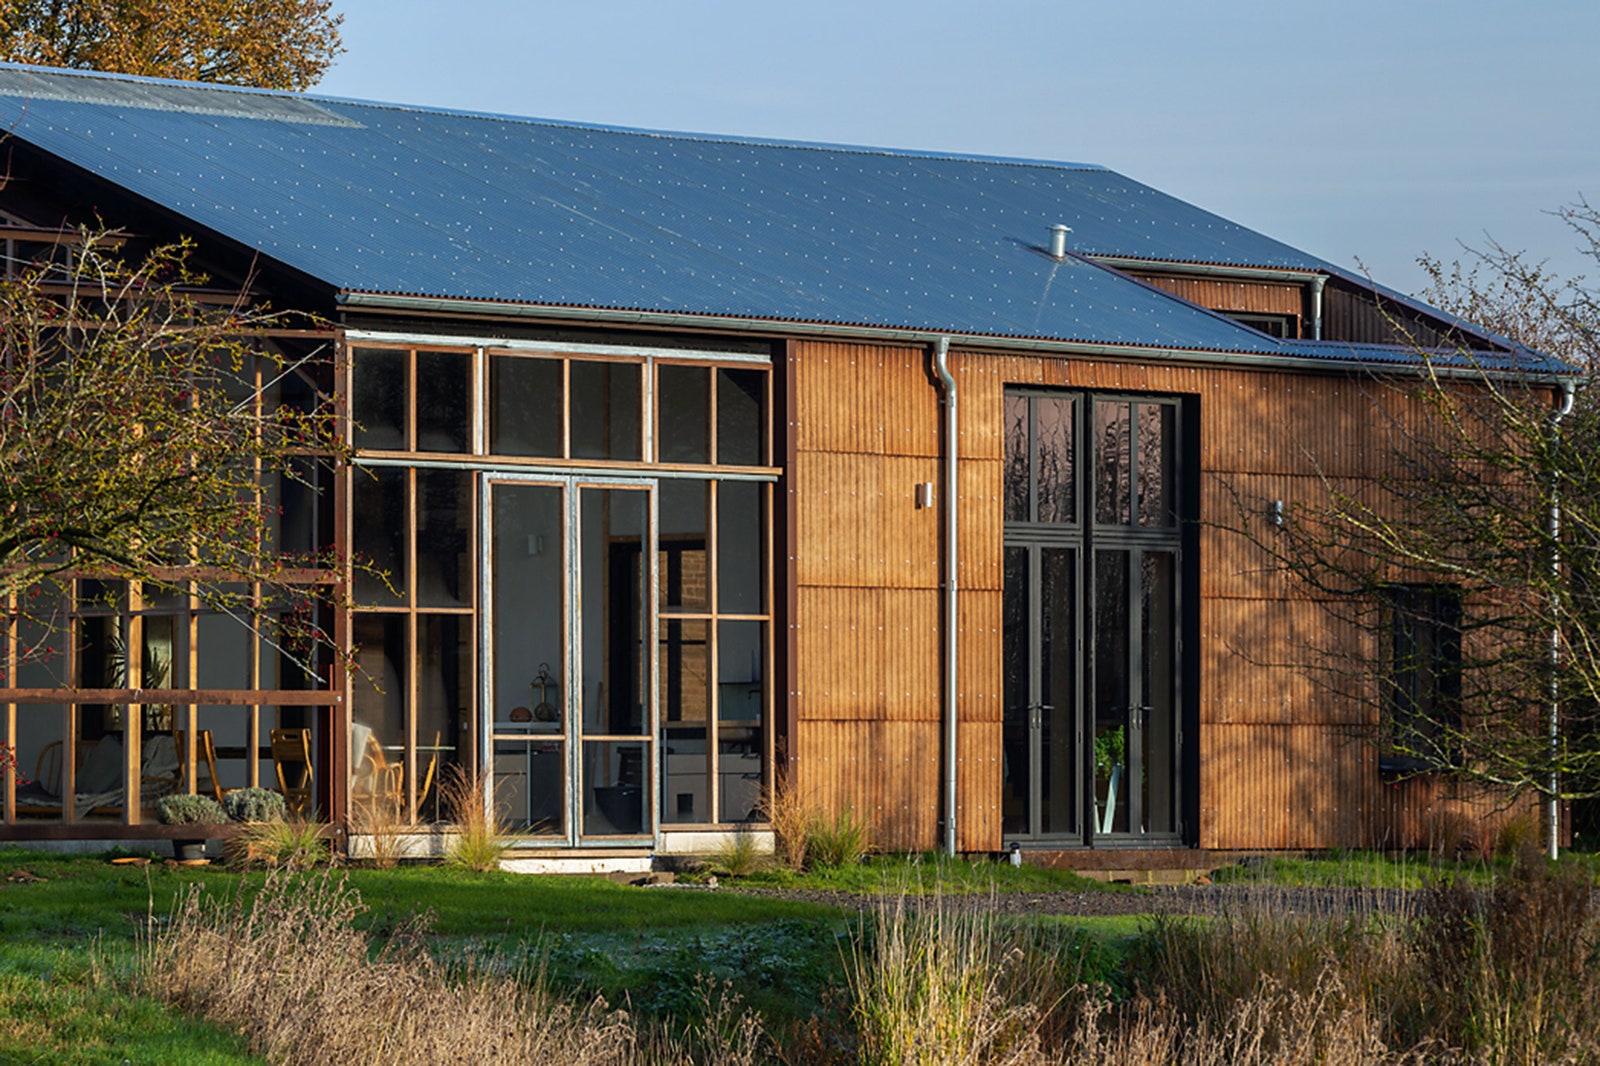 Flat House в Британии — совместная работа архитекторов из Material Cultures Practice Architecture. Он построен из...